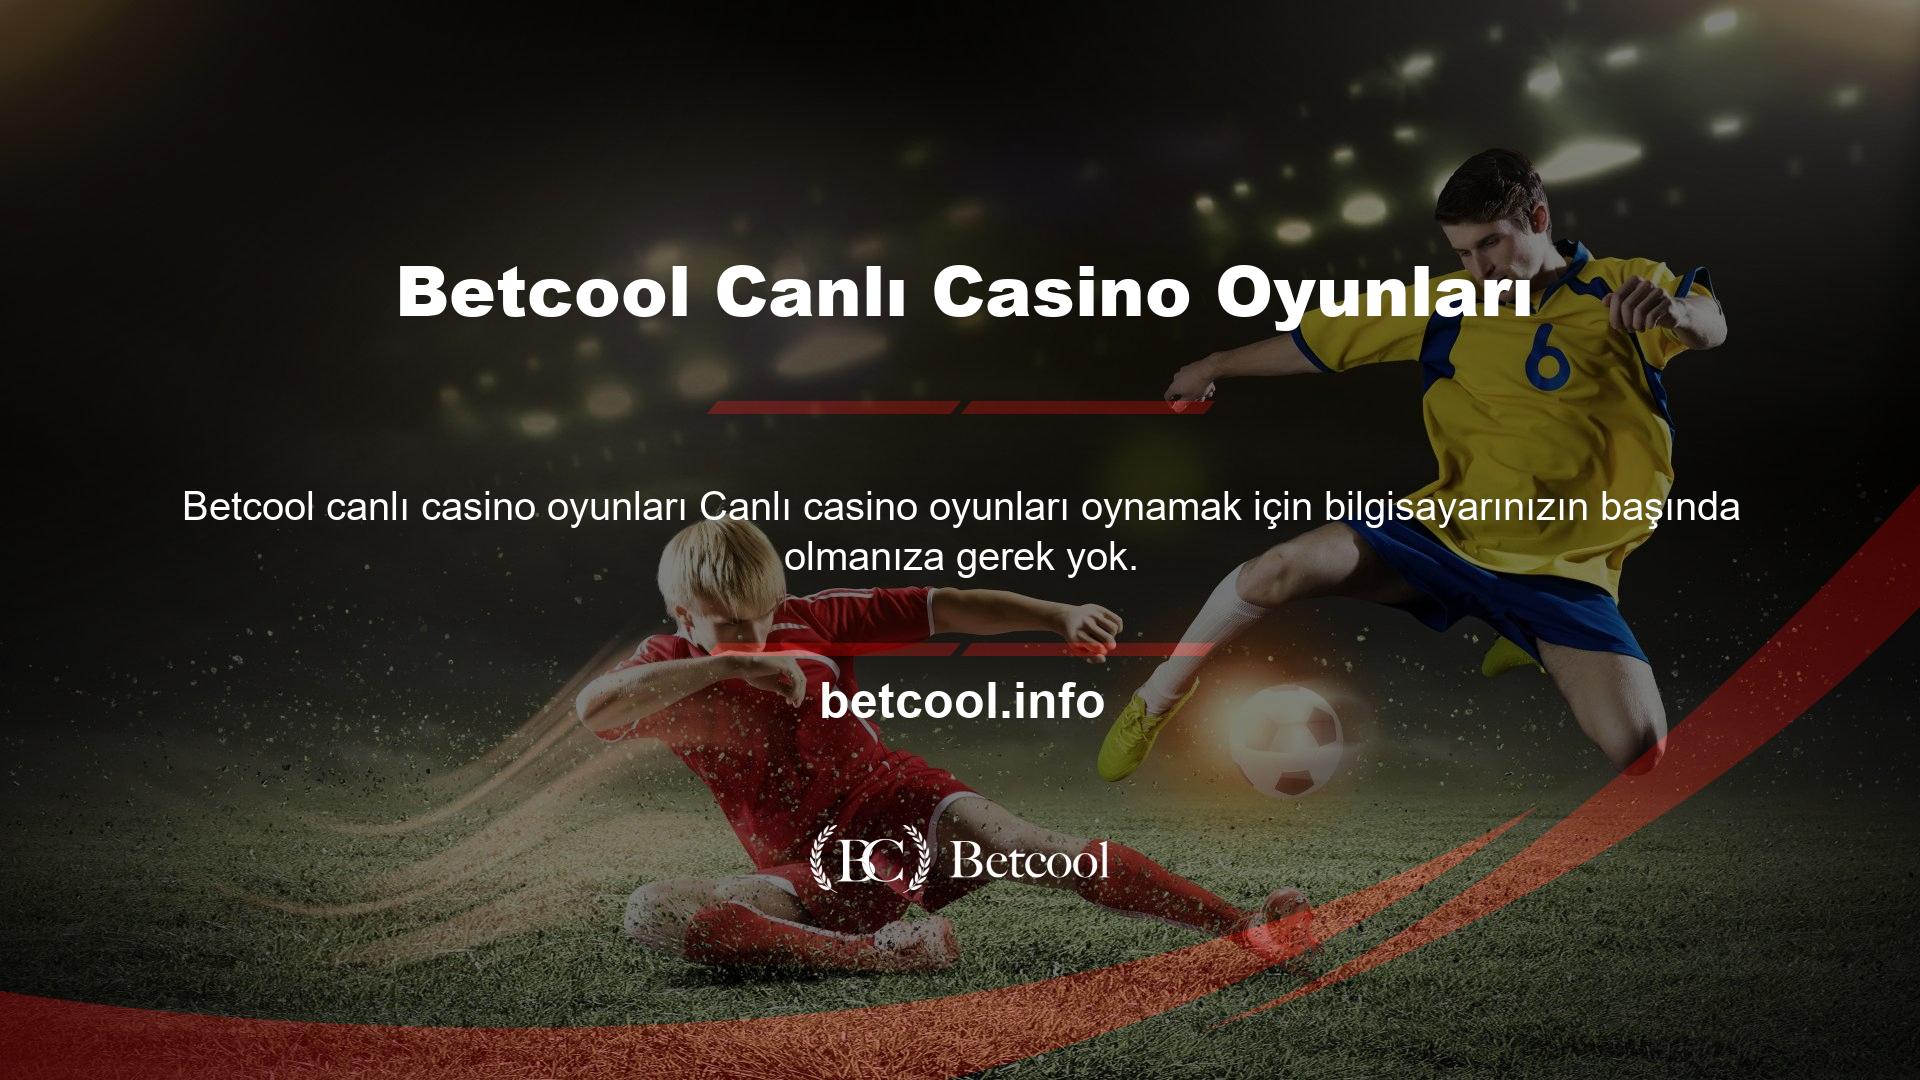 Betcool Canlı Casino Oyunları